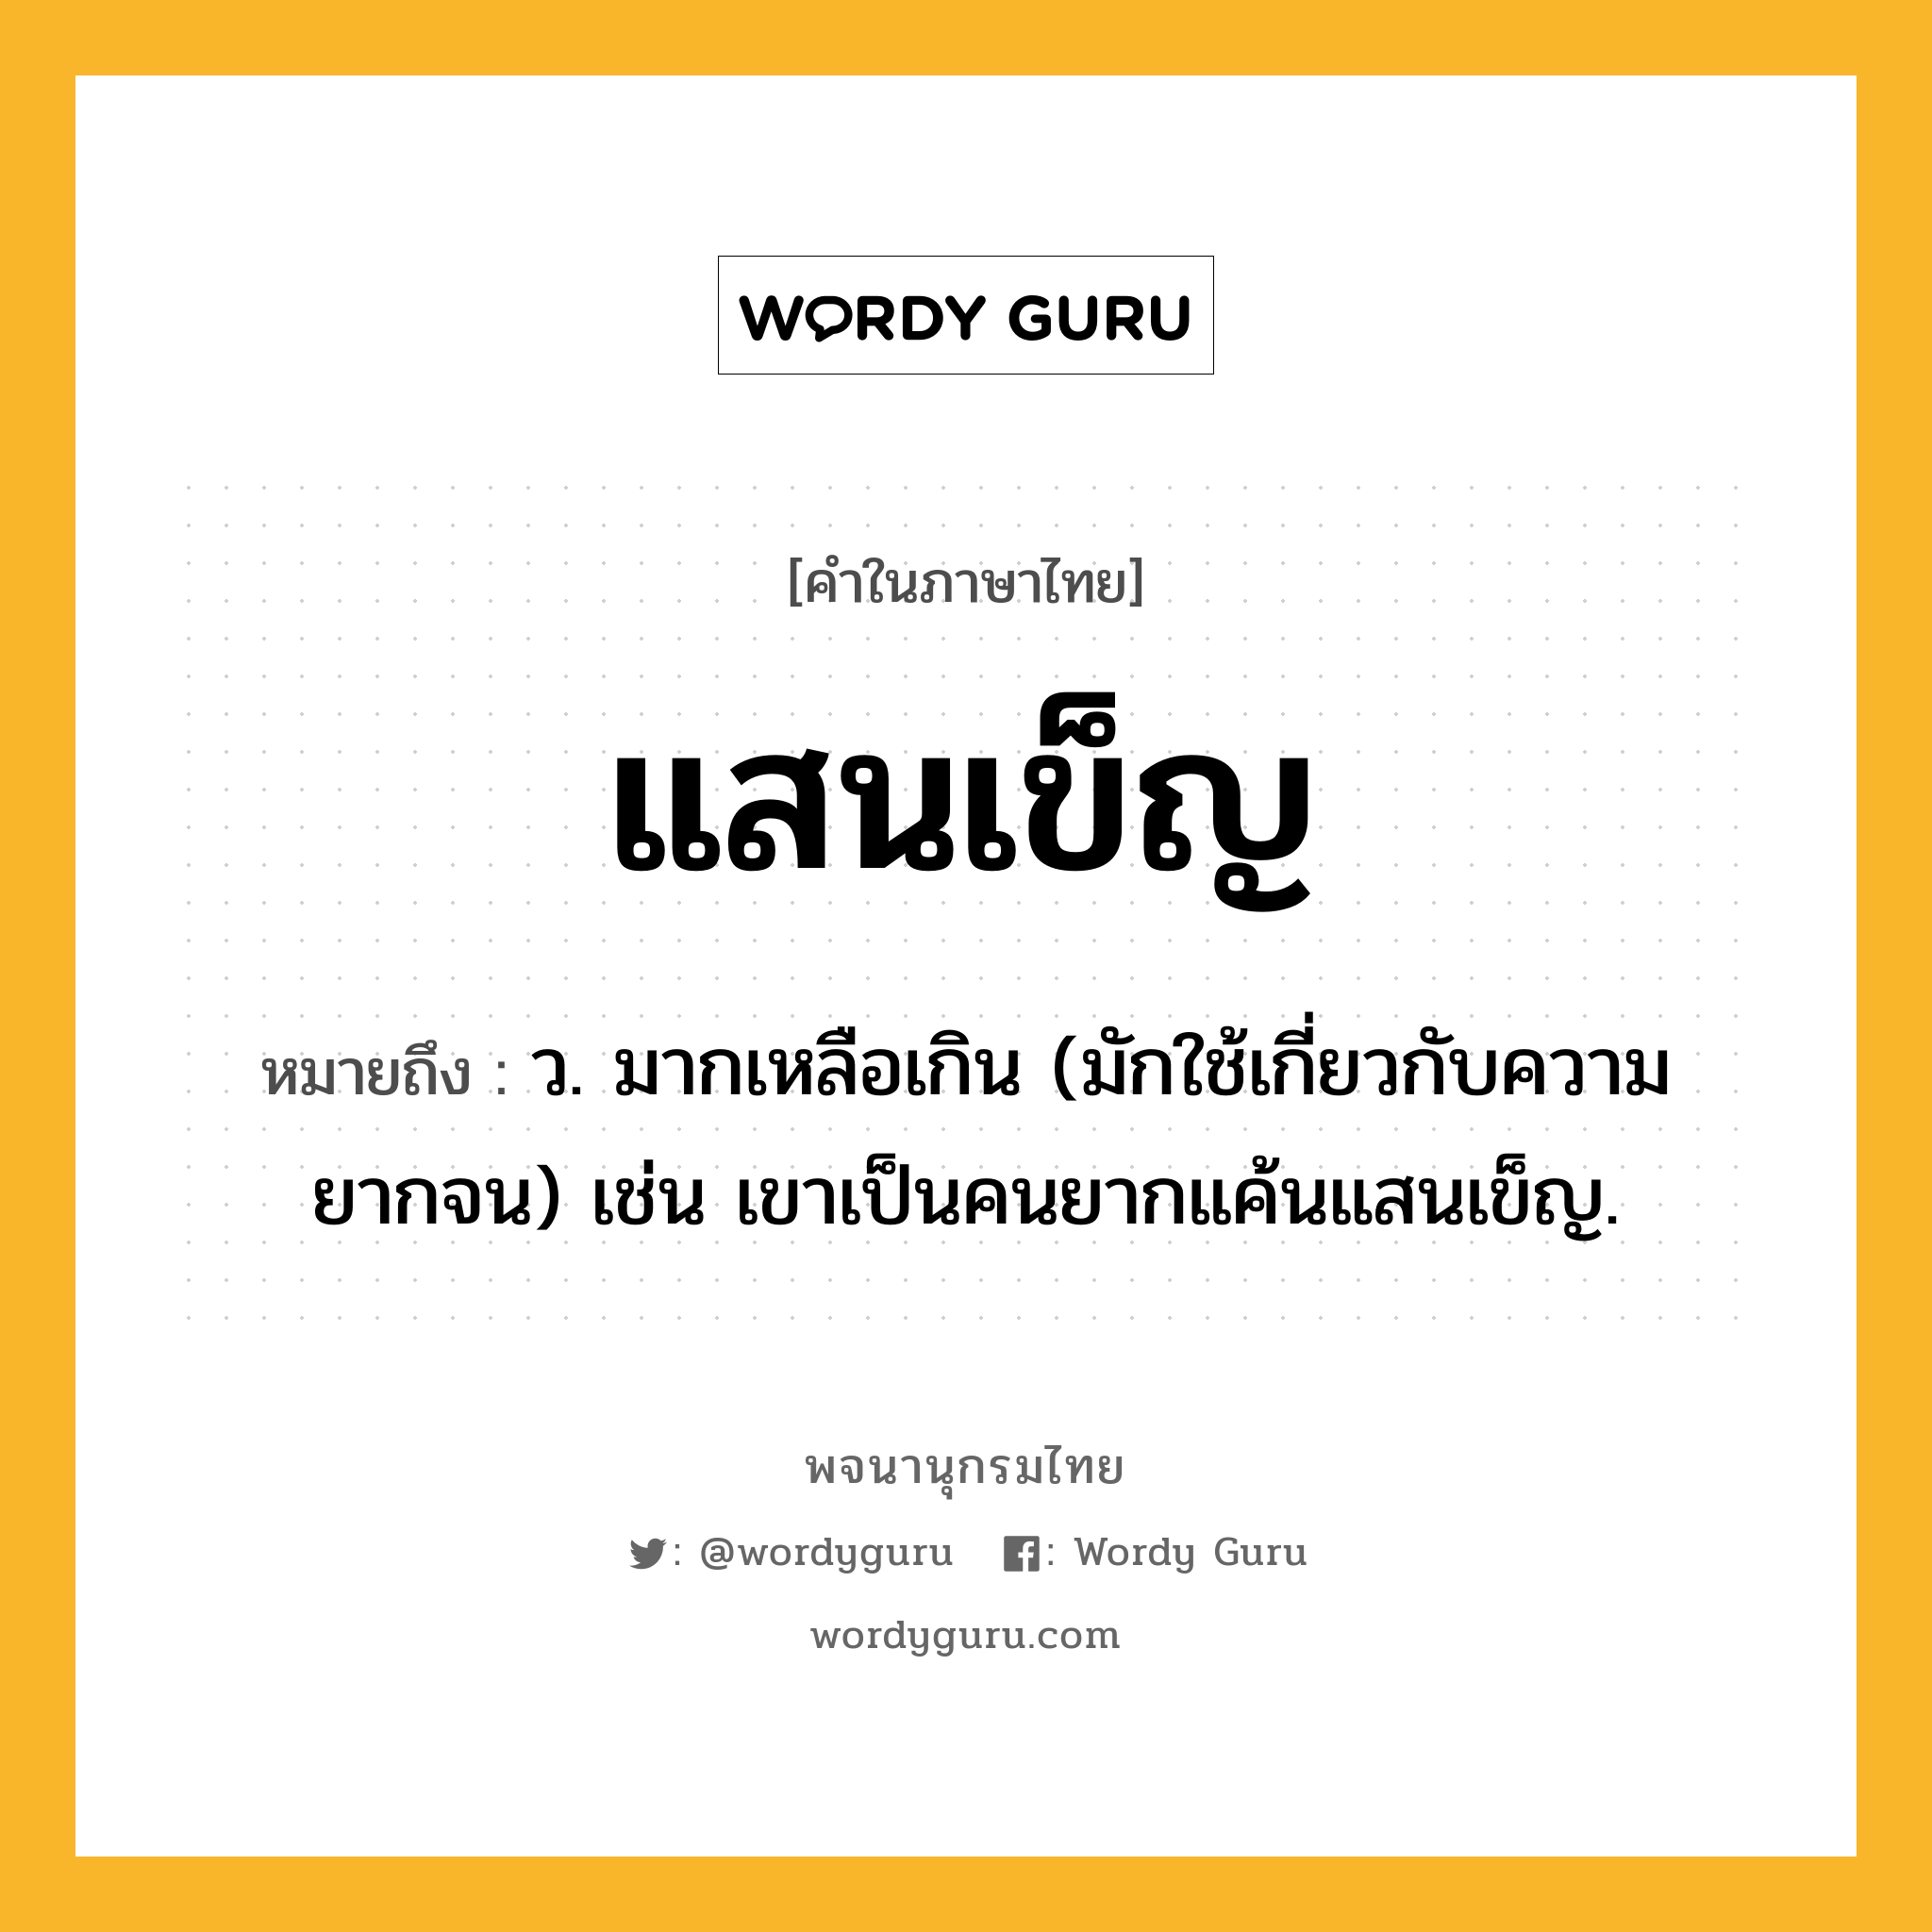 แสนเข็ญ หมายถึงอะไร?, คำในภาษาไทย แสนเข็ญ หมายถึง ว. มากเหลือเกิน (มักใช้เกี่ยวกับความยากจน) เช่น เขาเป็นคนยากแค้นแสนเข็ญ.